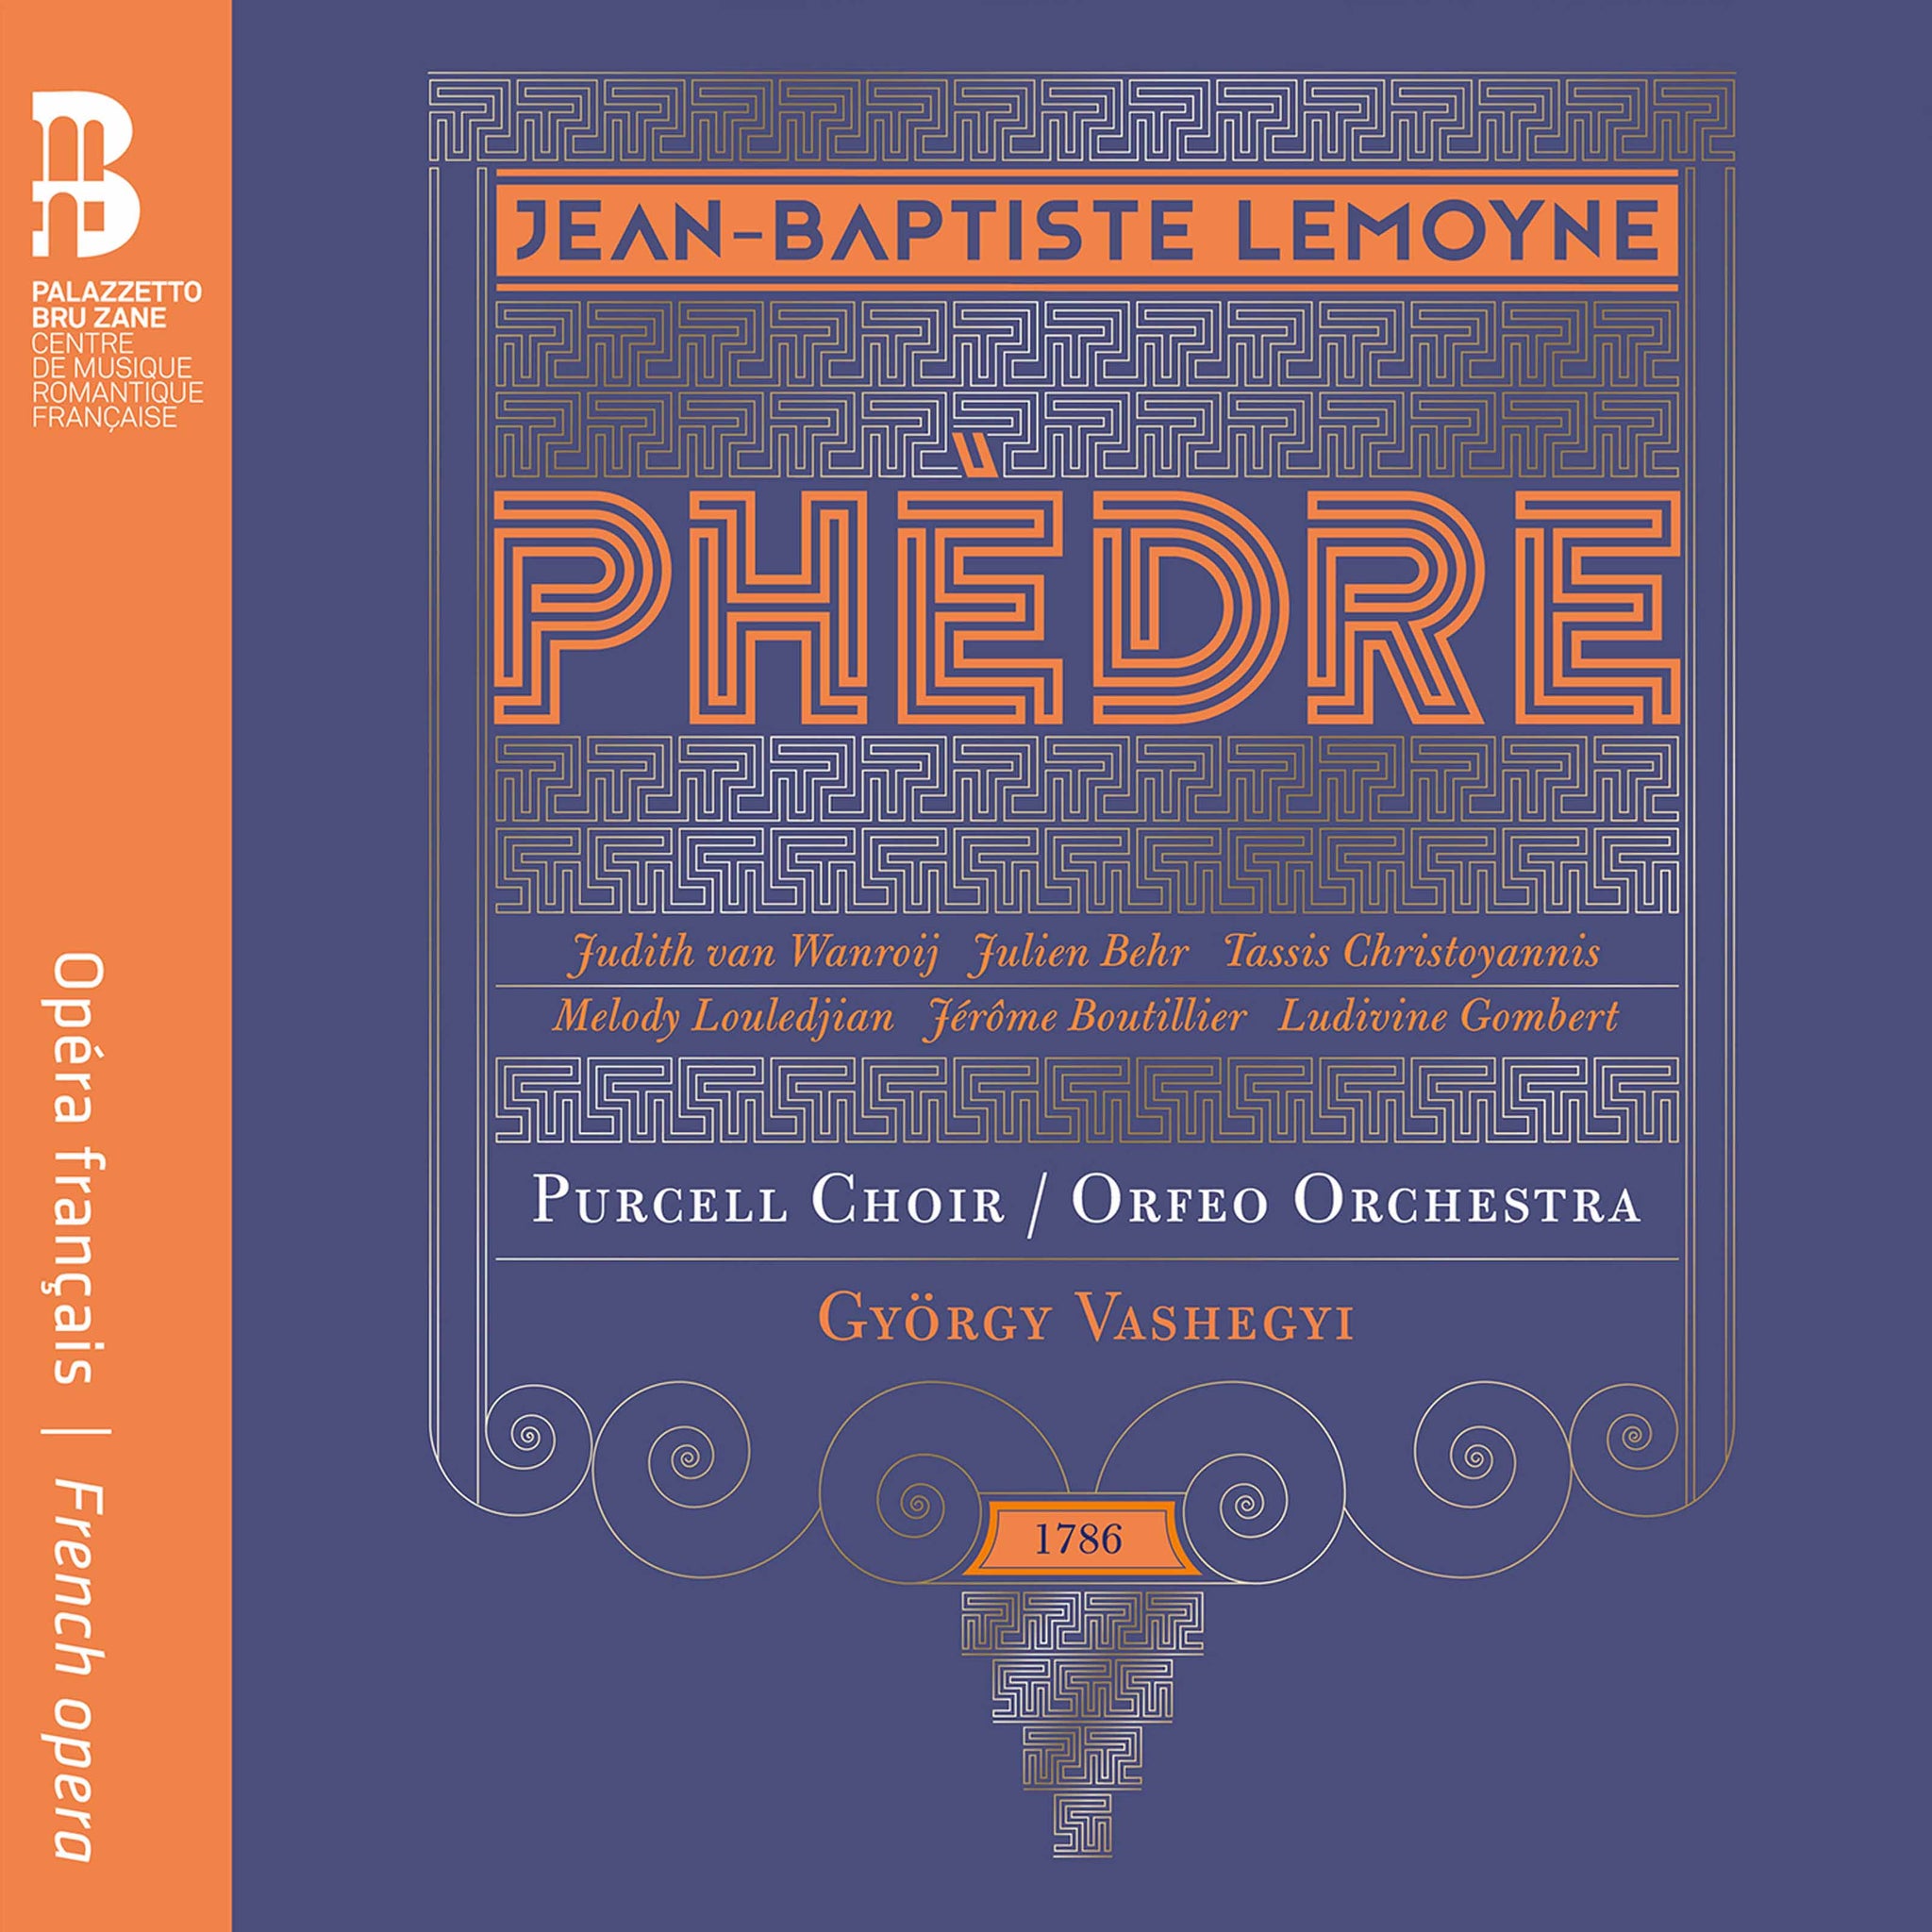 Lemoyne: Phedre / Vashegyi, Orfeo Orchestra